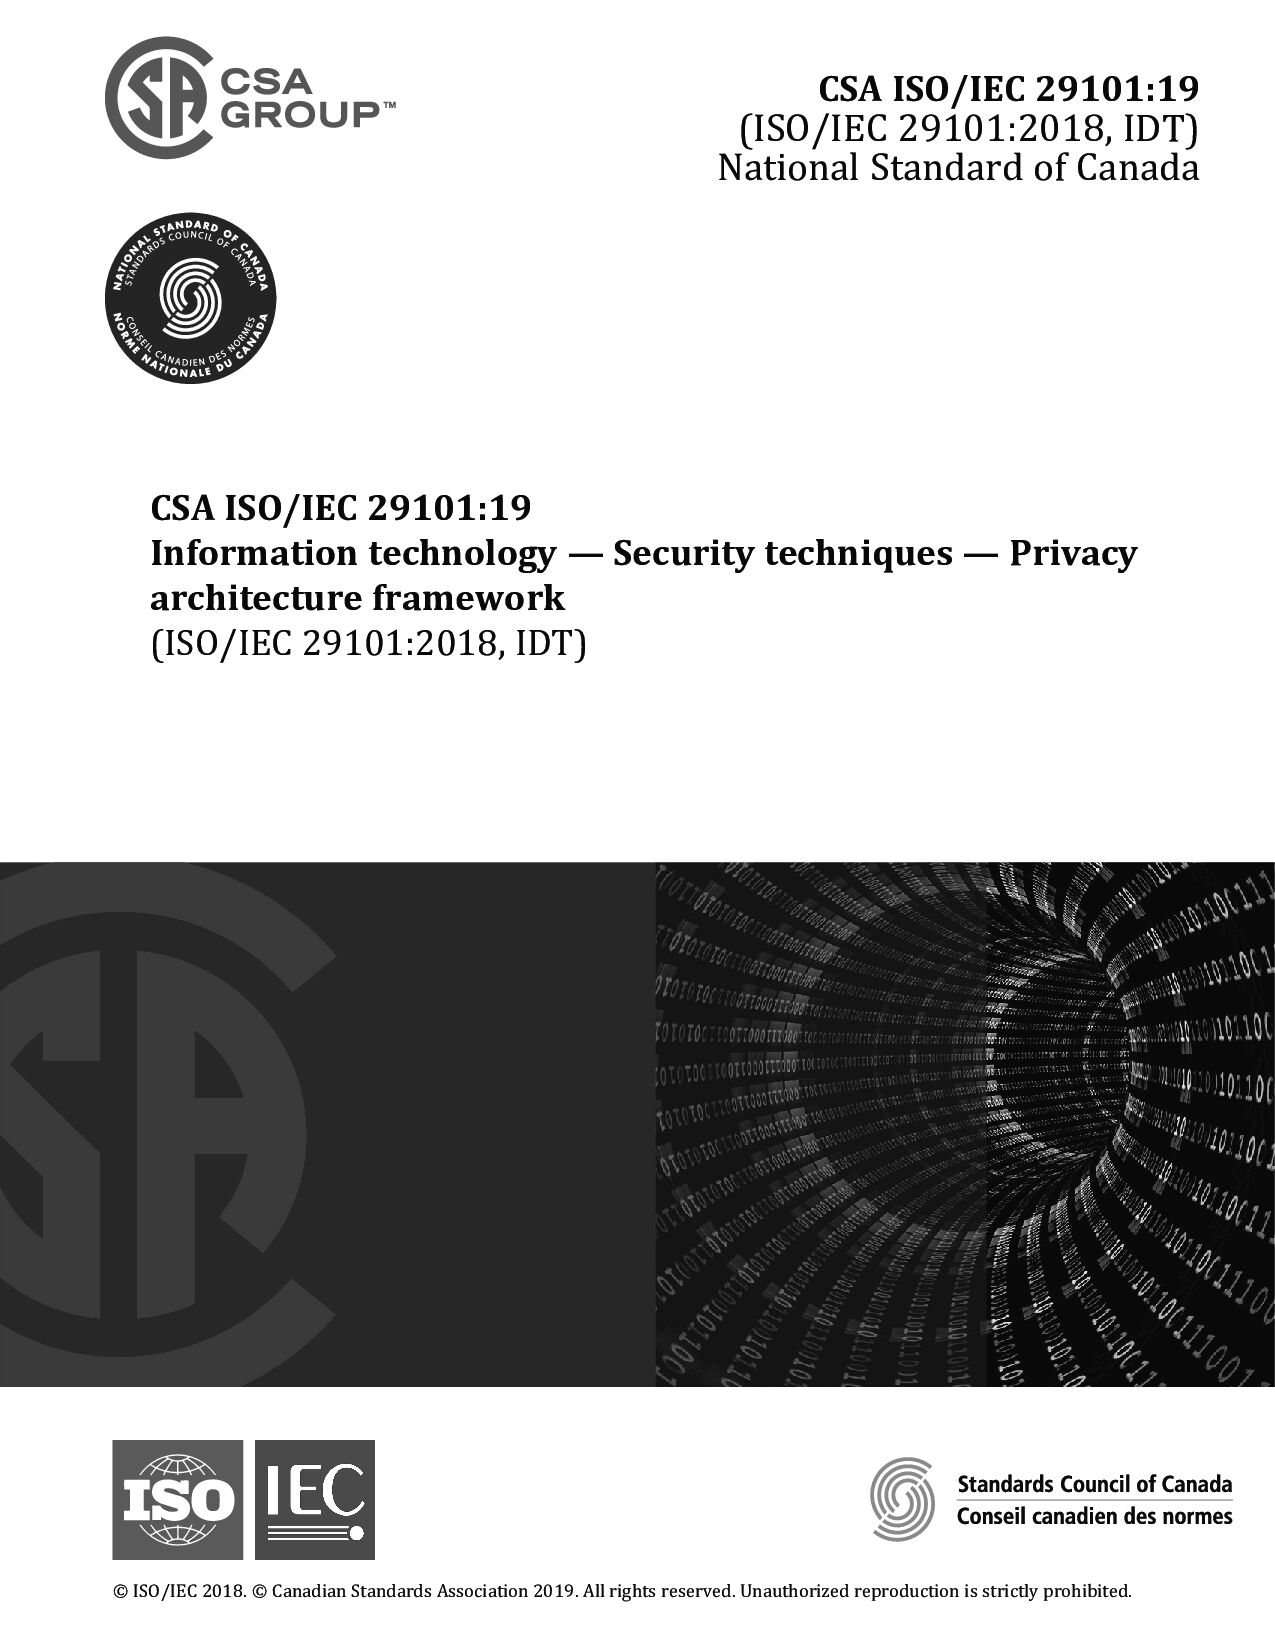 CSA ISO/IEC 29101:2019封面图